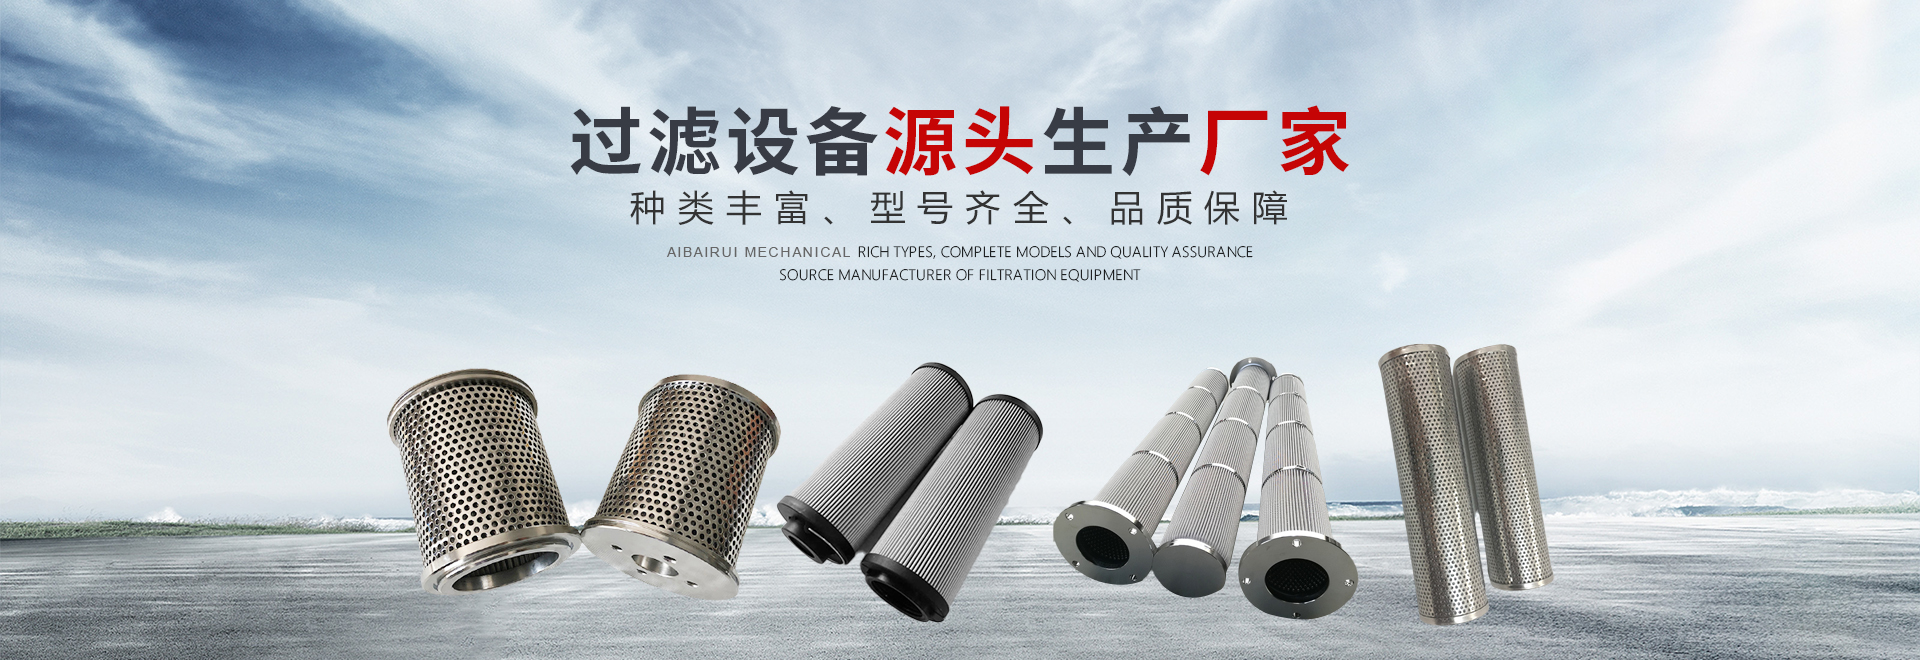 河南省九游J9中国机械设备有限公司